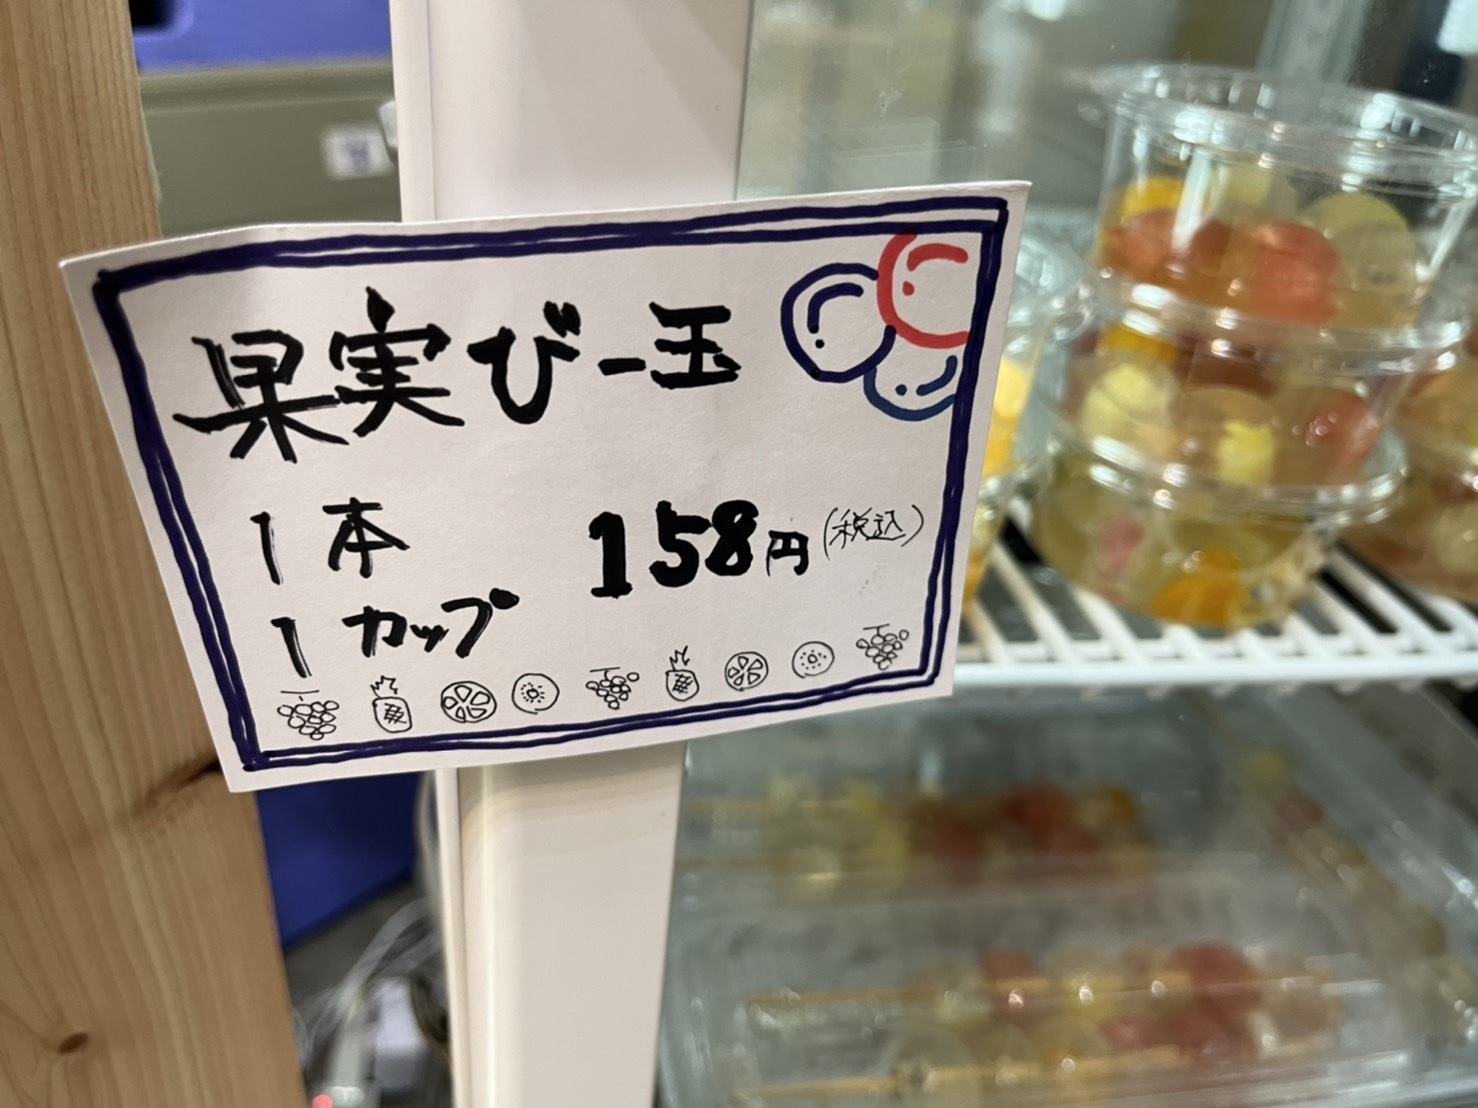 果実びー玉 税込158円